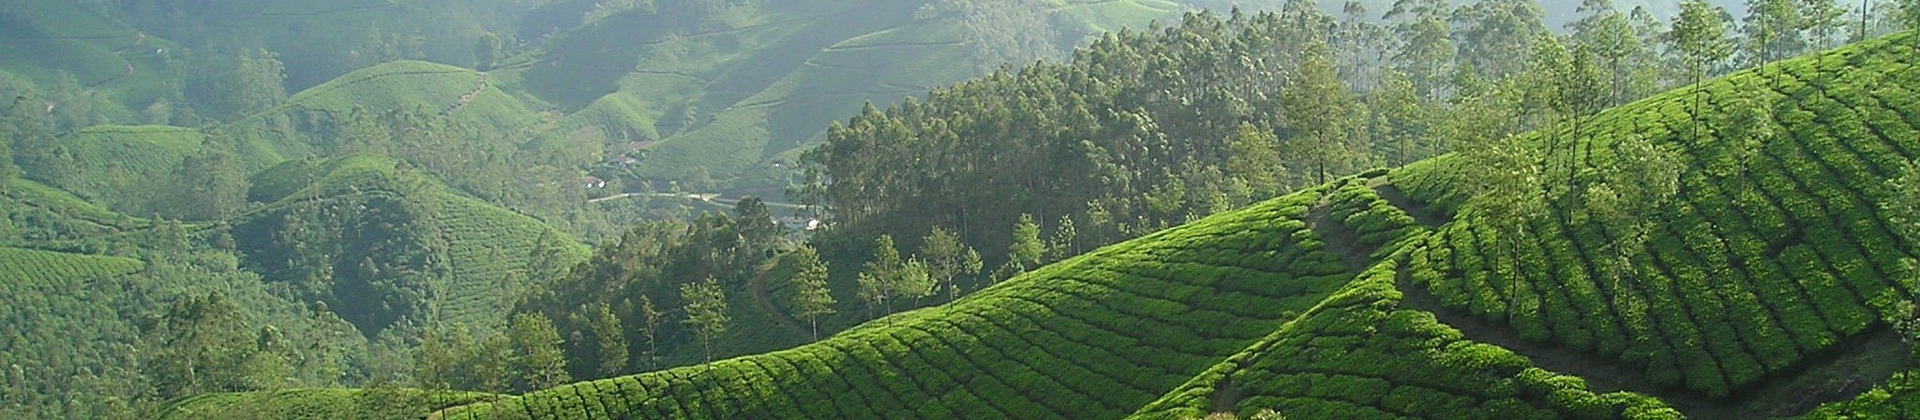 Ceylon (Sri Lanka) Tea - Cup of Tea